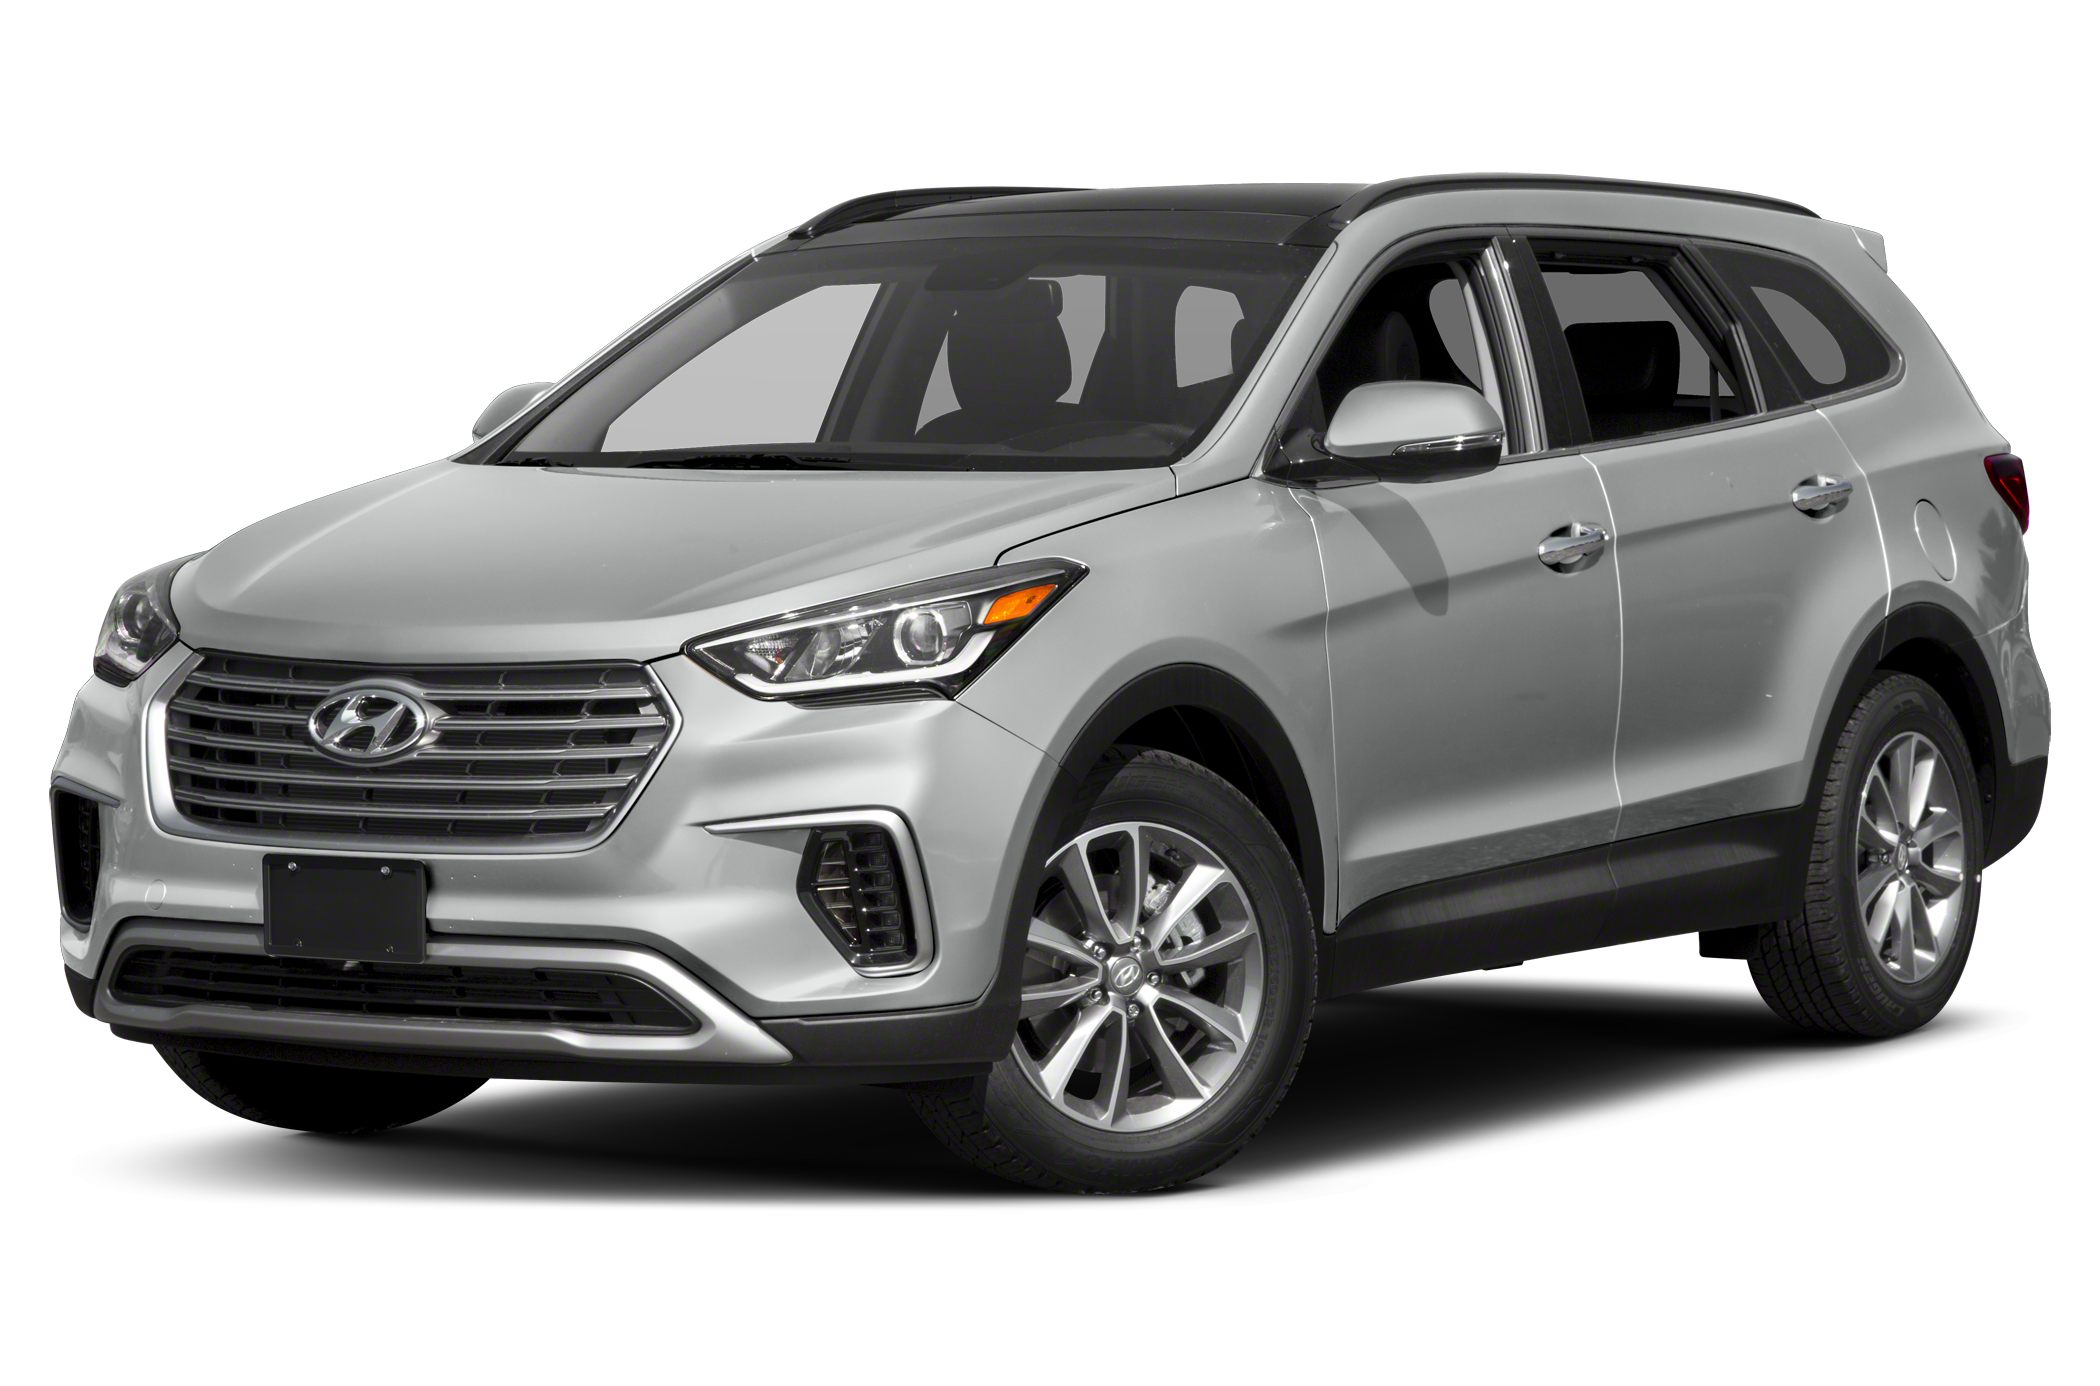 2018 Hyundai Santa Fe Owner Reviews and Ratings